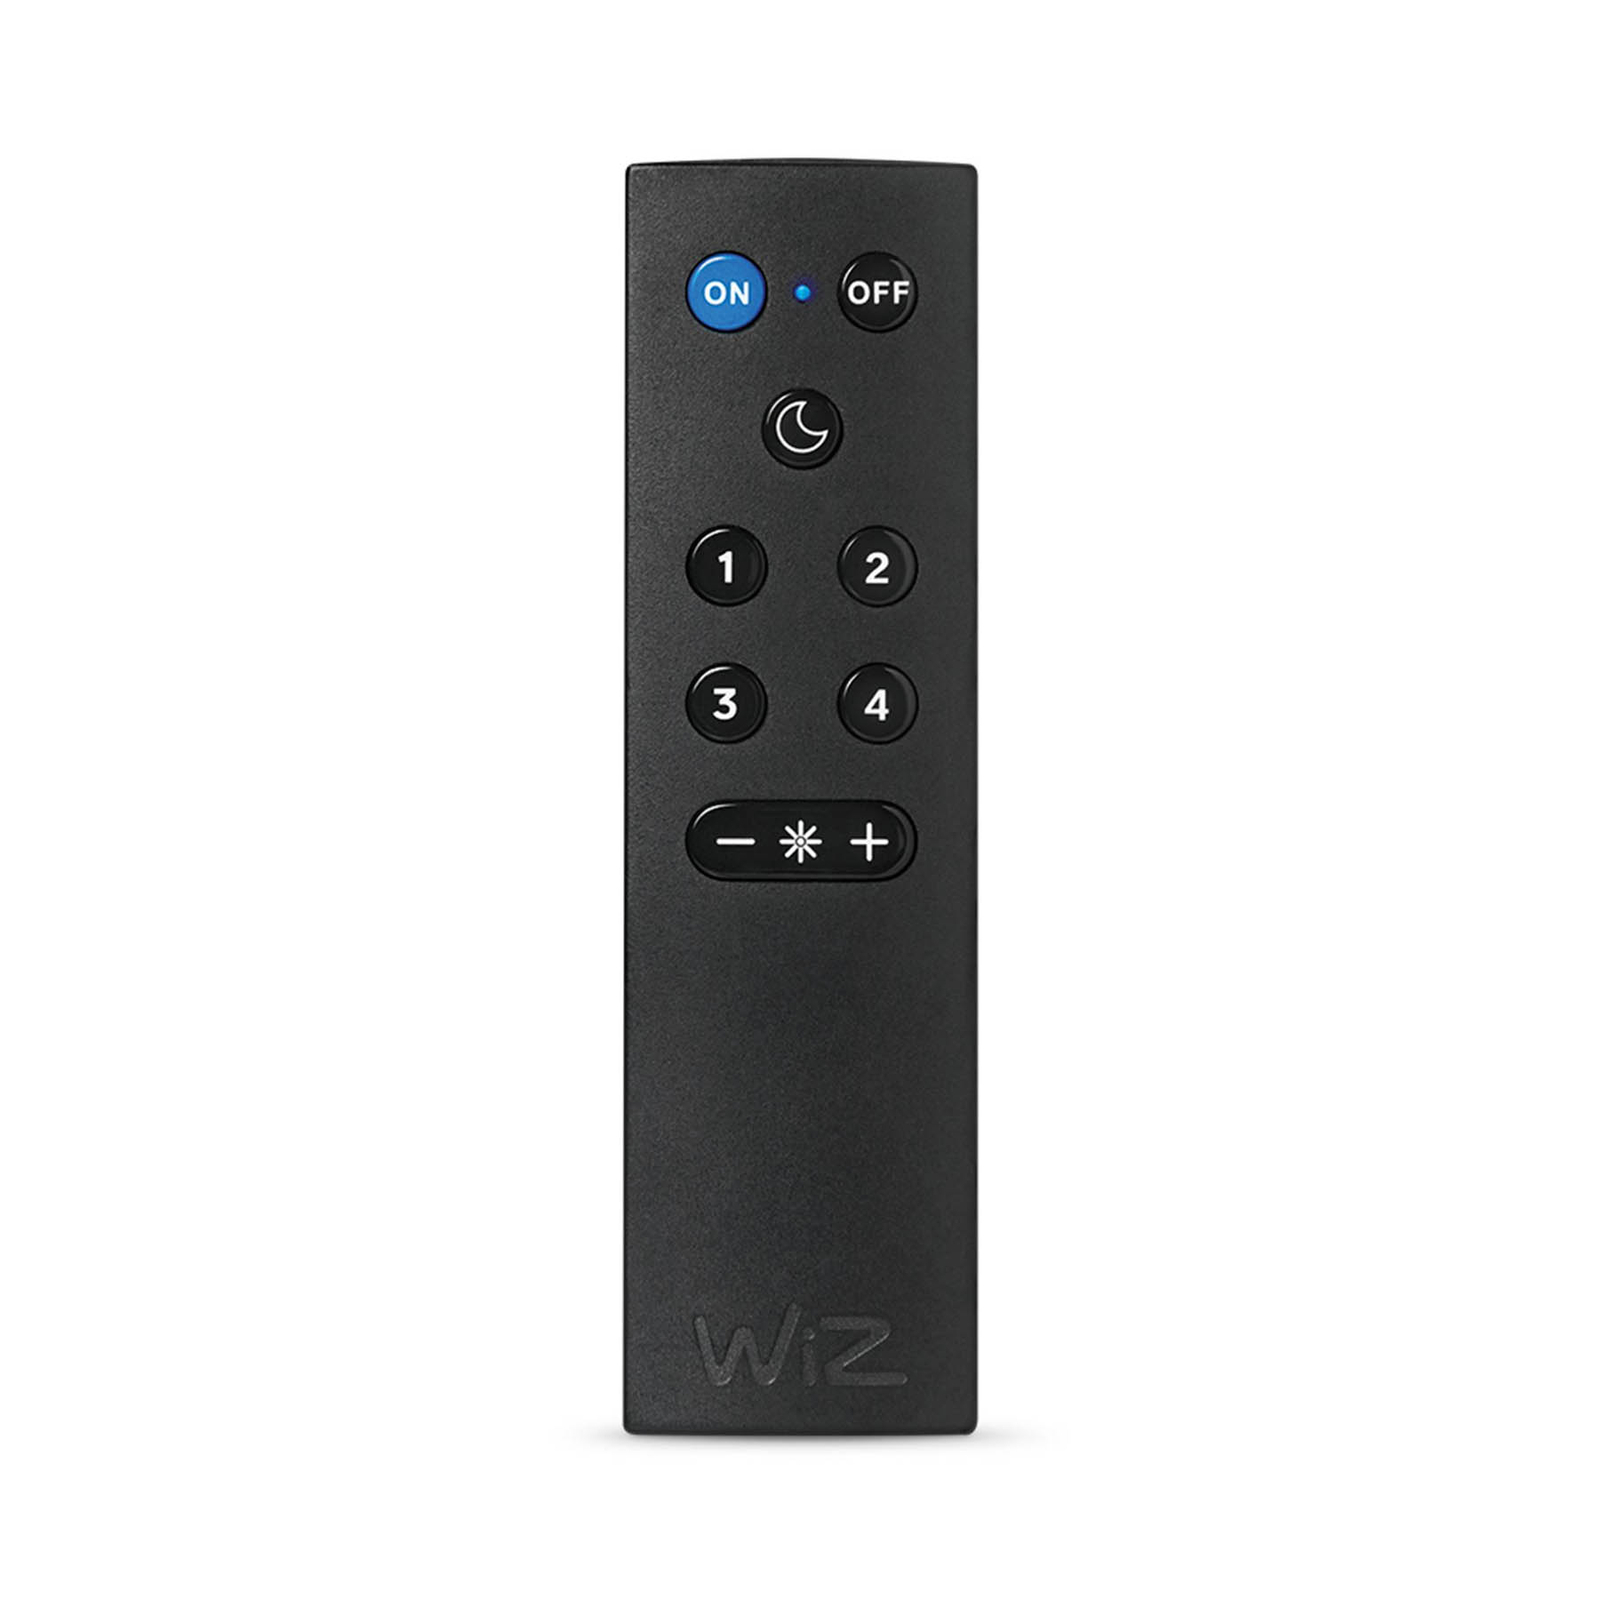 WiZ Mote WiFi remote control for light control